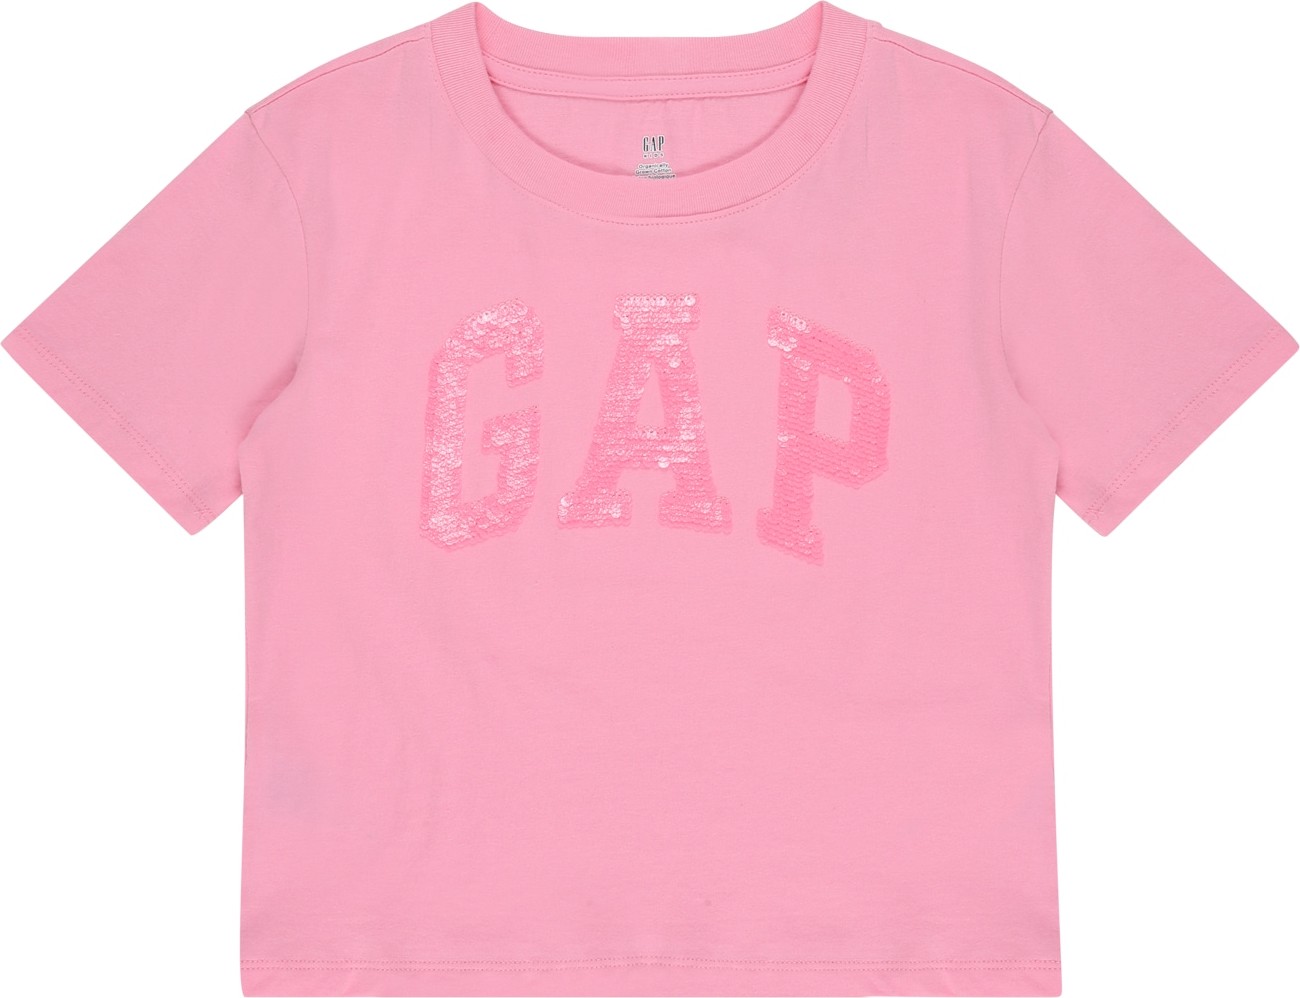 GAP Tričko pink